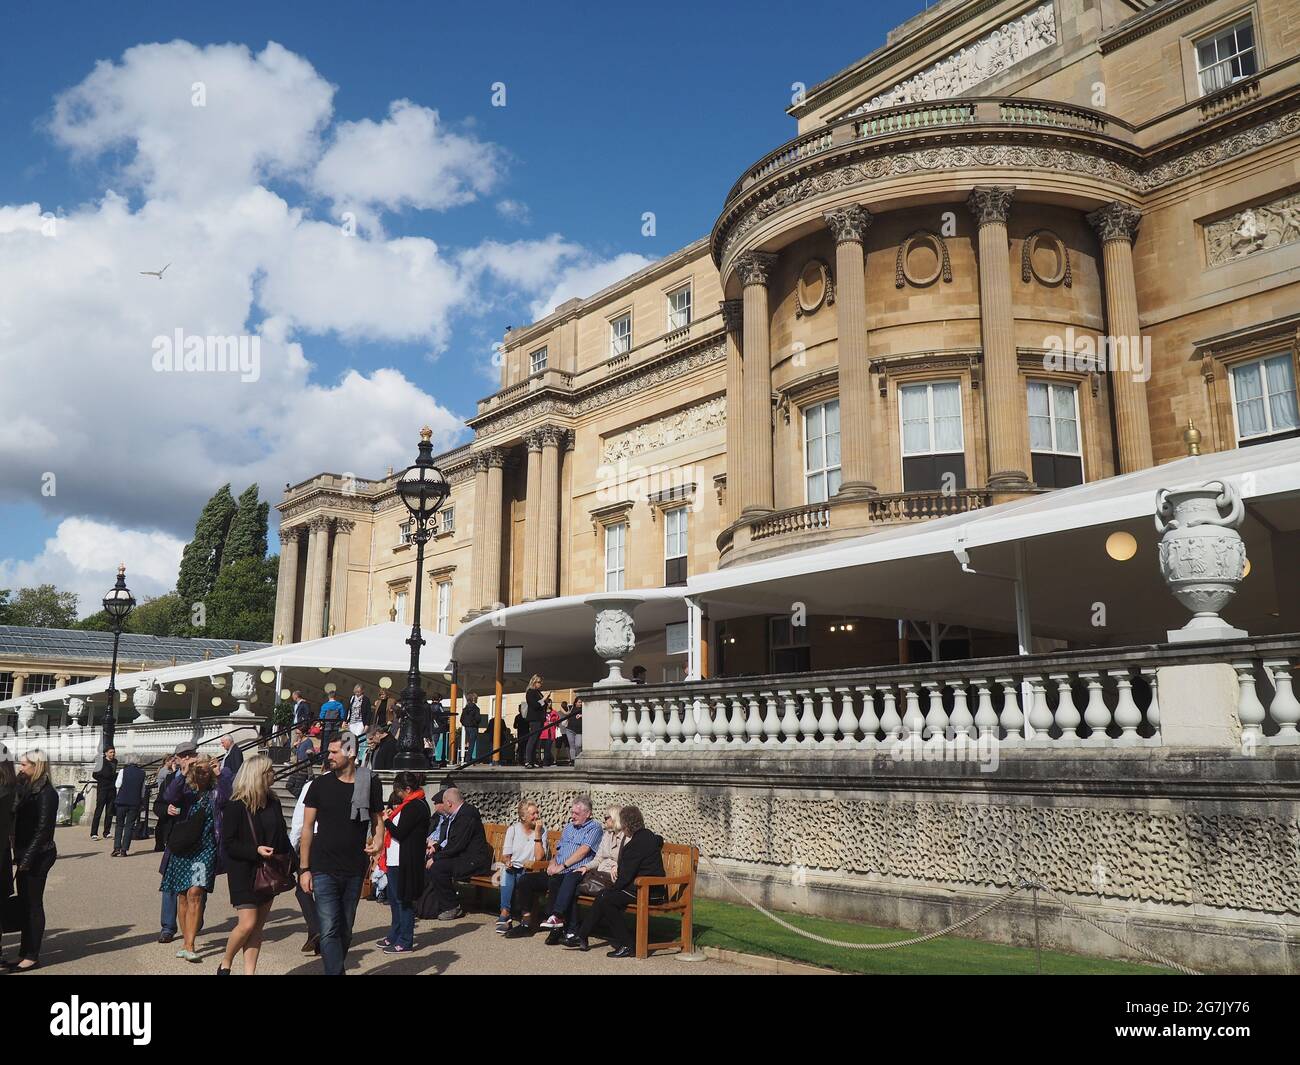 Vue arrière du palais de Buckingham, vers le jardin, avec les visiteurs qui quittent l'excursion Banque D'Images